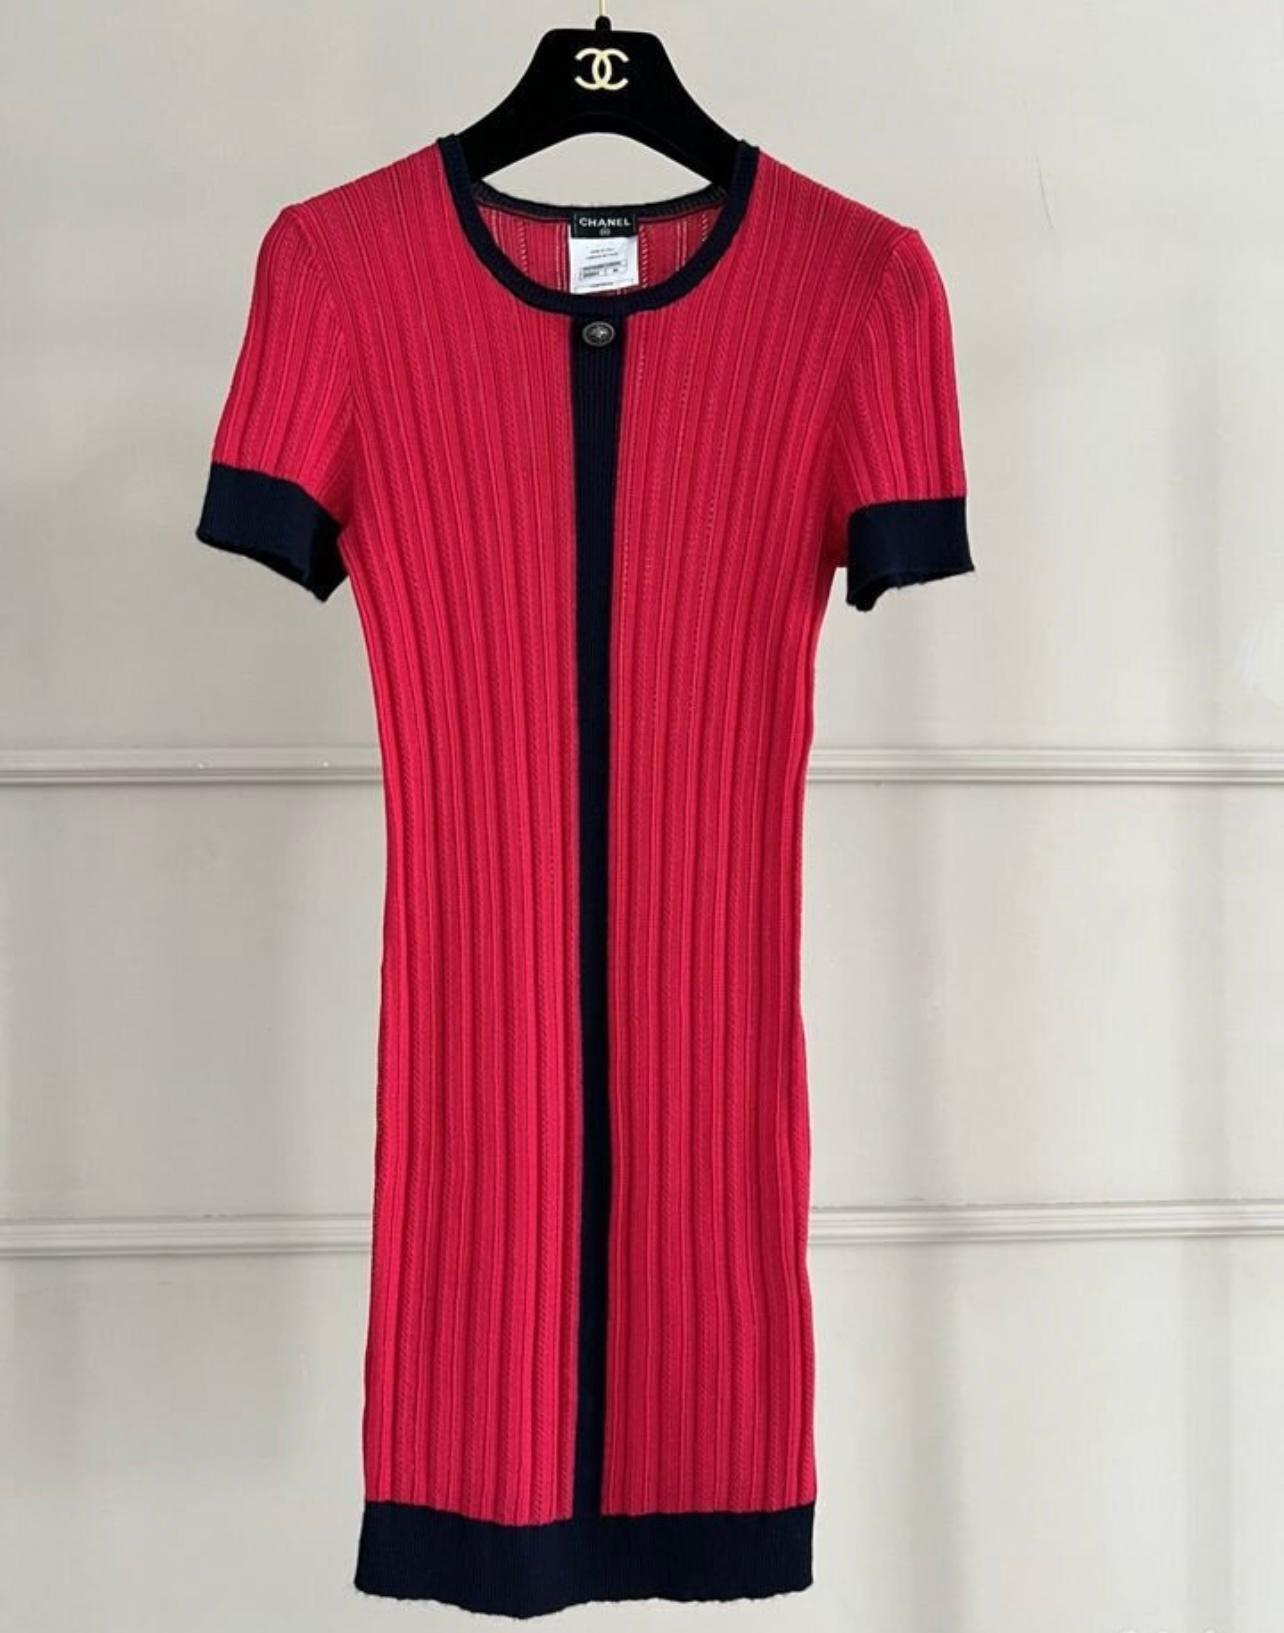 Chanel Rot und Schwarz CC Charme wunderbare Kleid.
Größenbezeichnung 36 FR, tadelloser Zustand